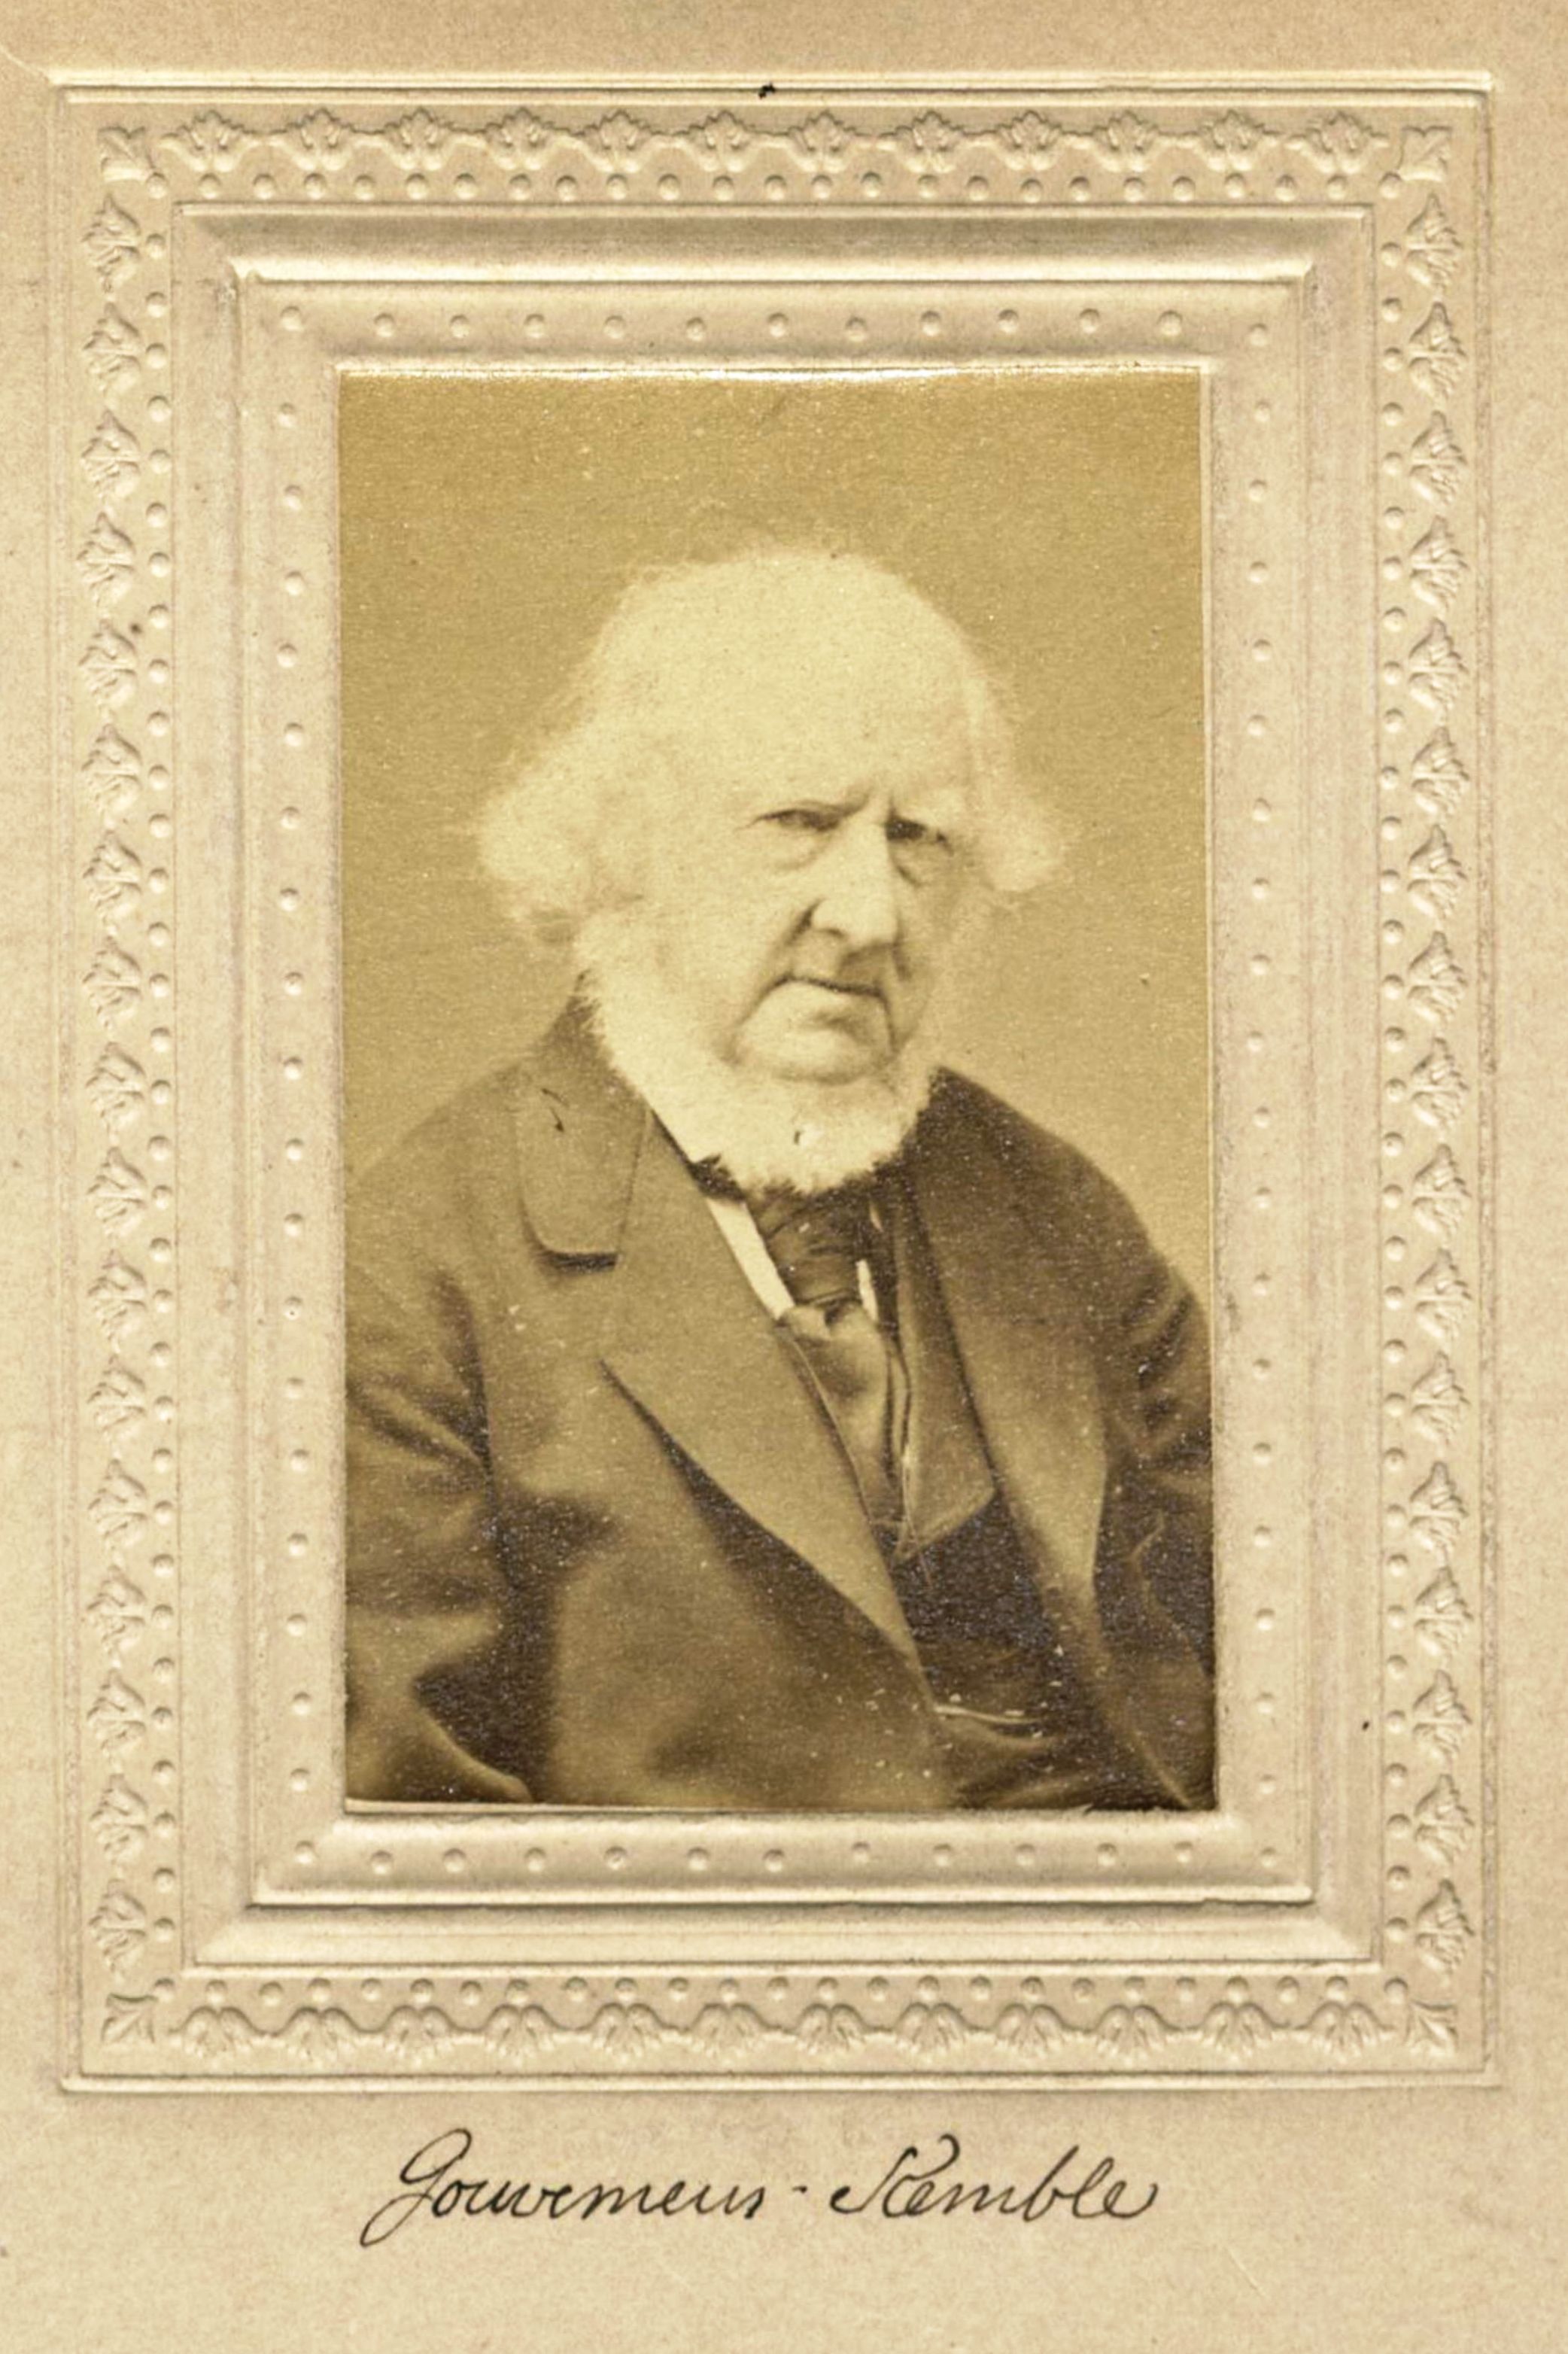 Member portrait of Gouverneur Kemble